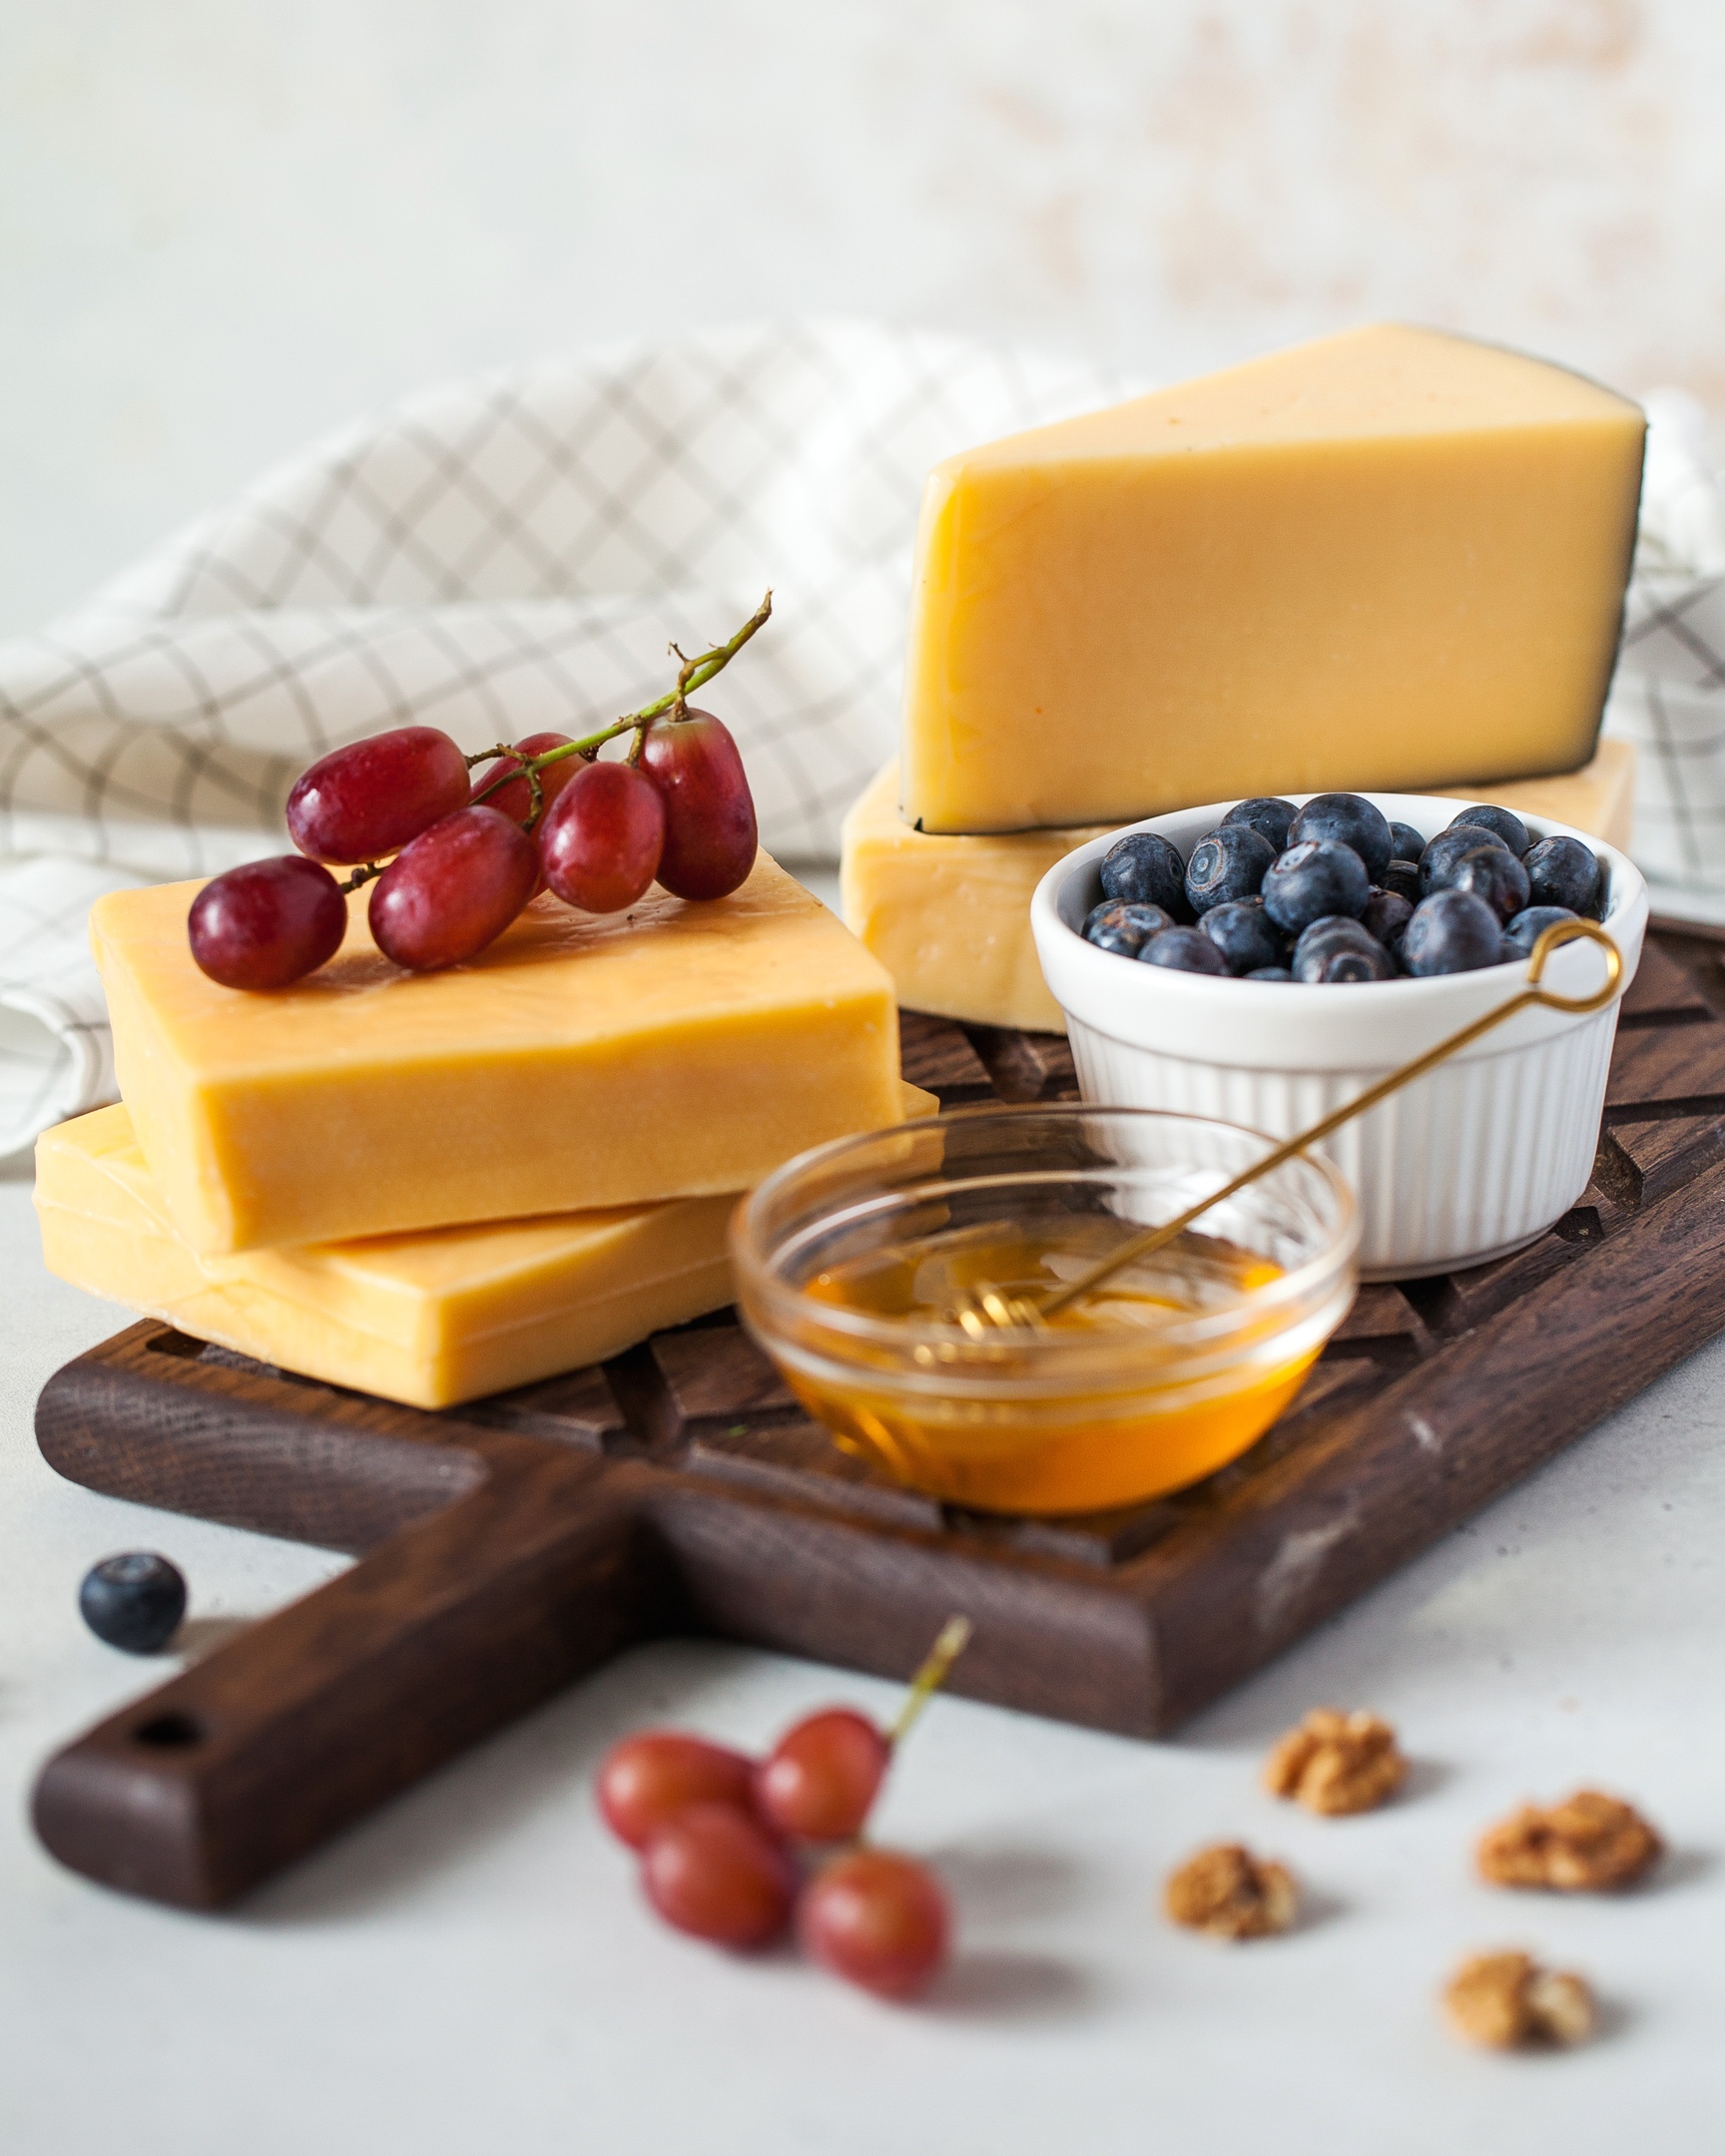 Сыр является неотъемлемой частью здорового сбалансированного рациона